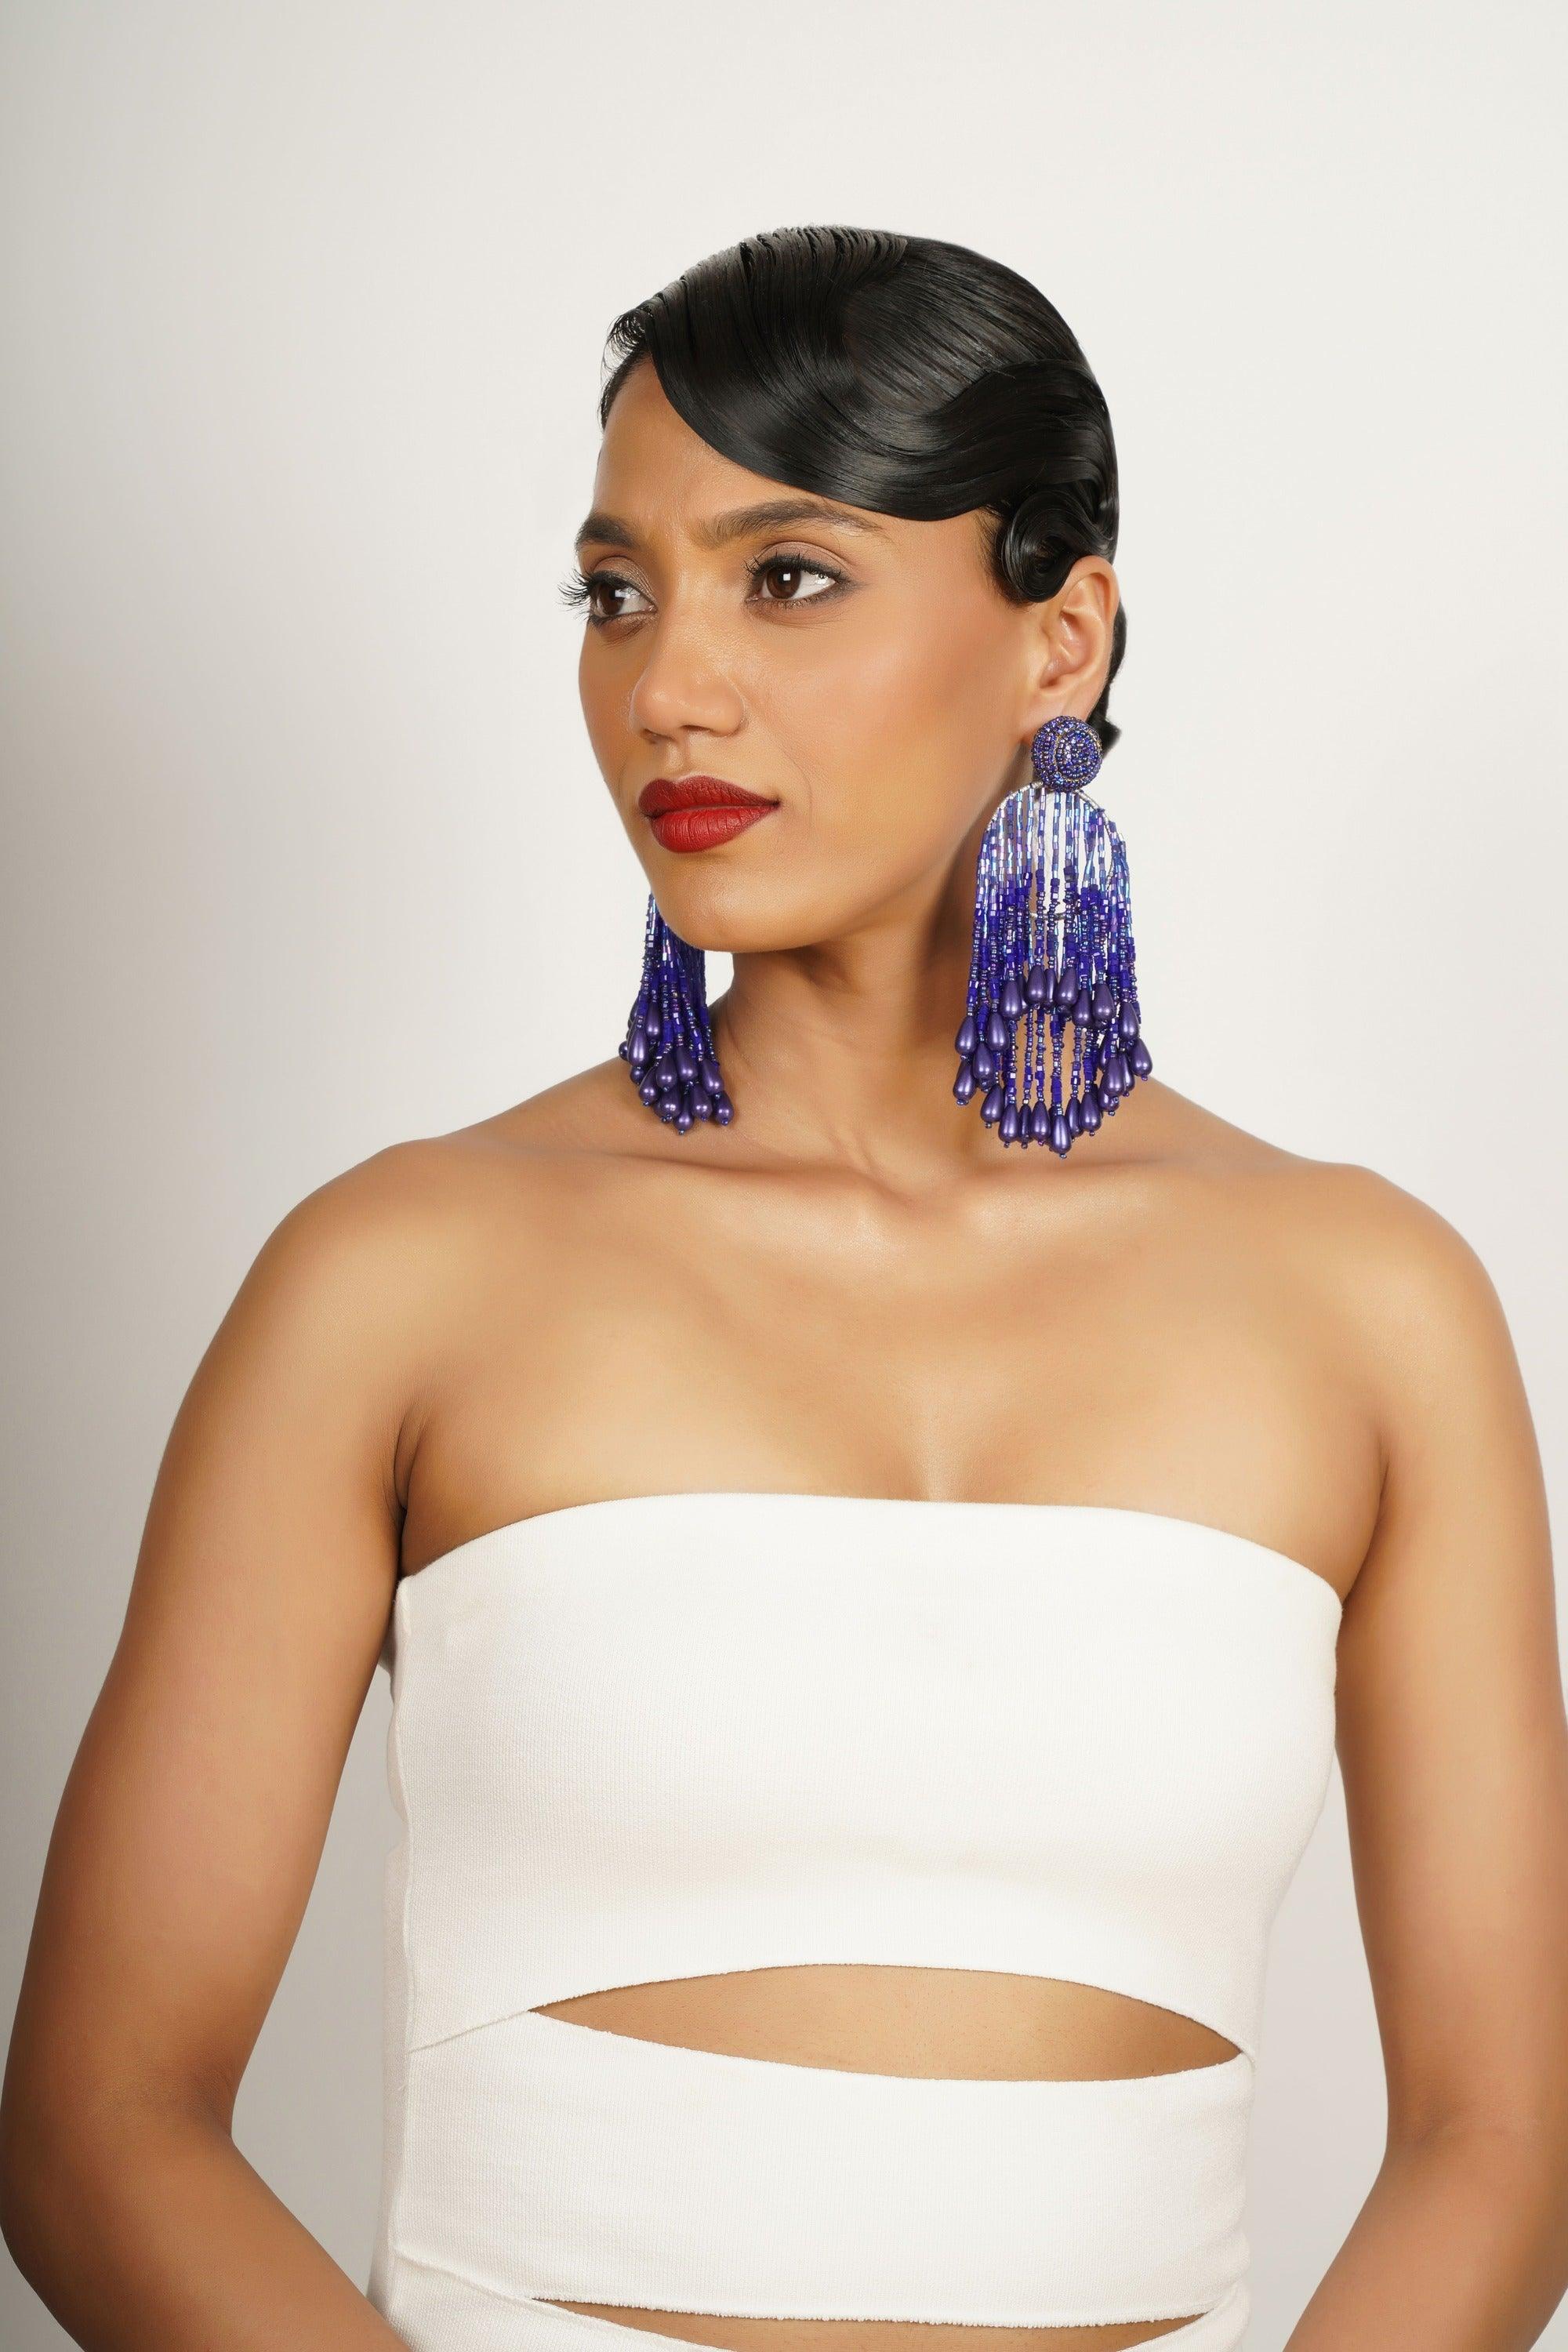 Sapphire Sky Hoop earrings